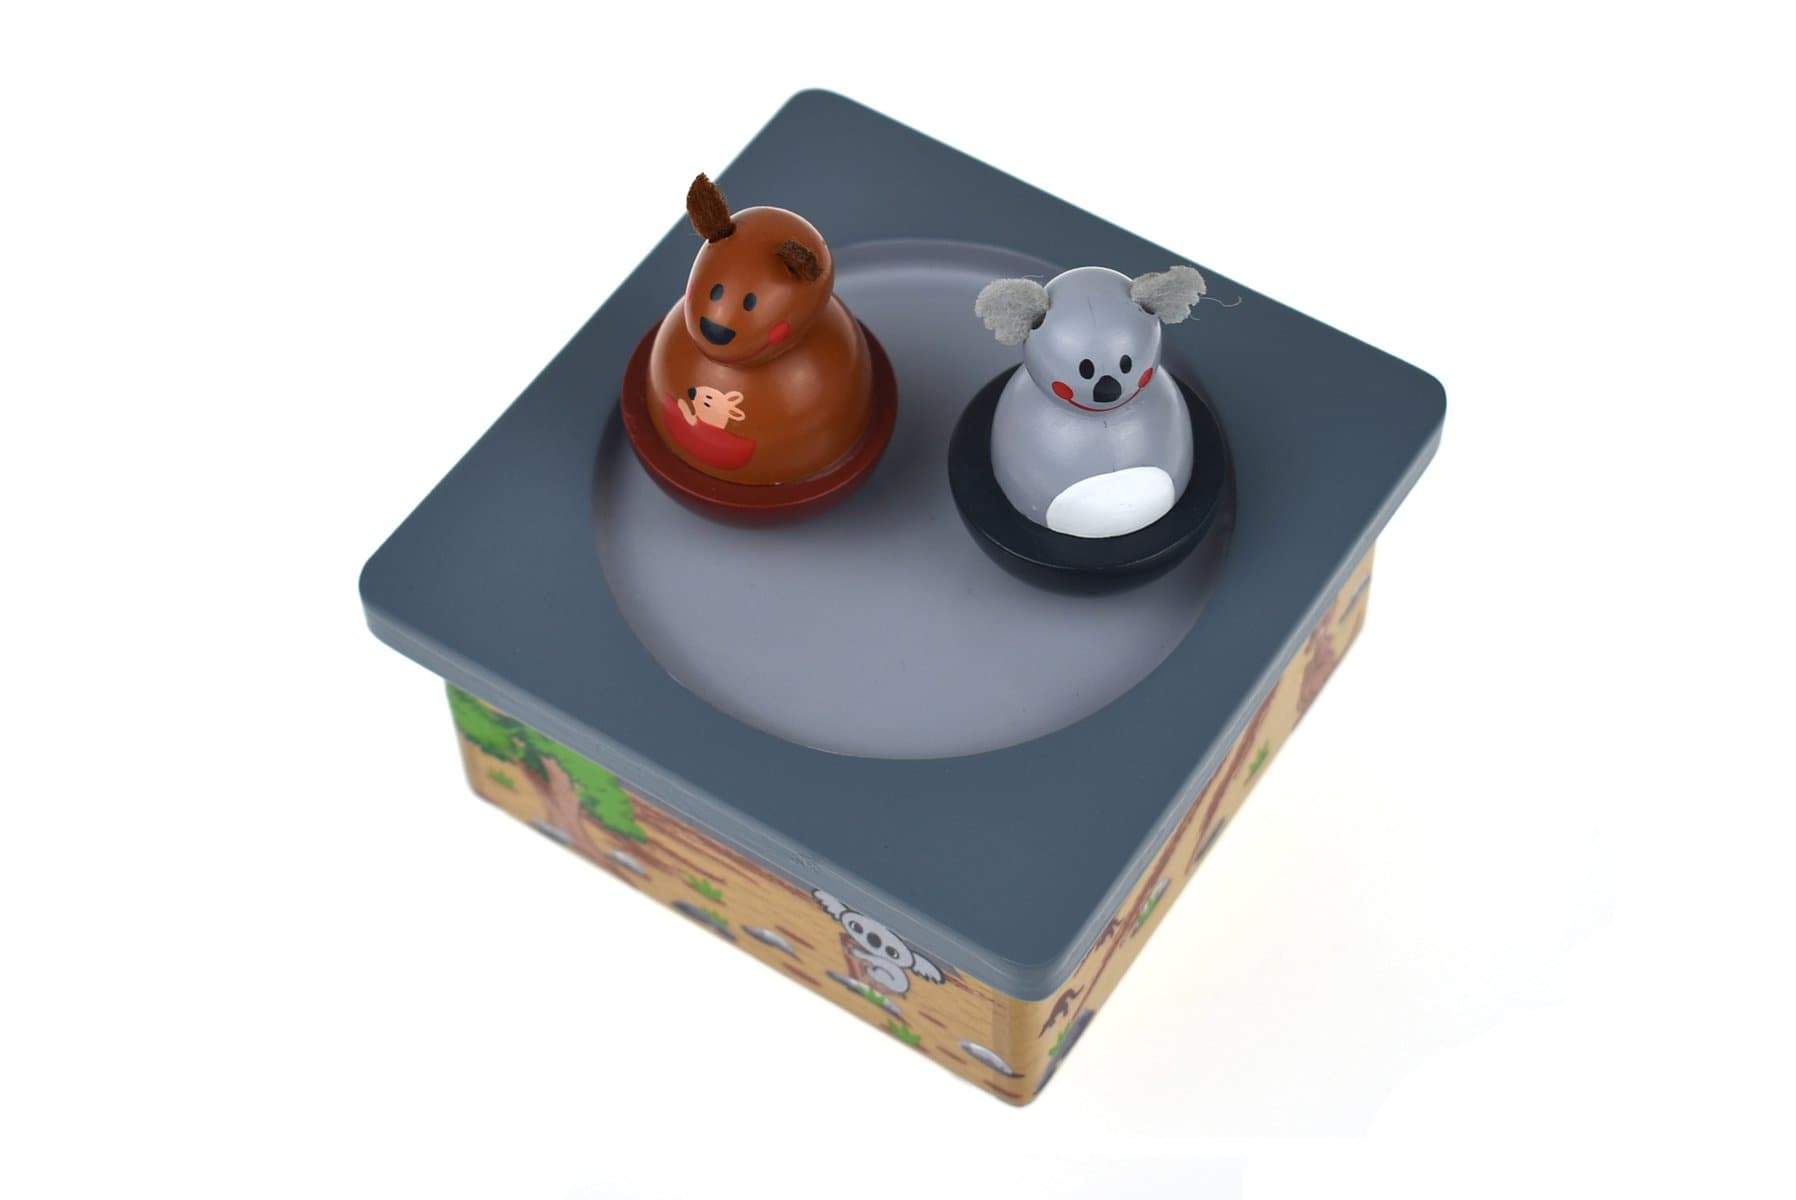 toys for infant Koala & Kangaroo Music Box